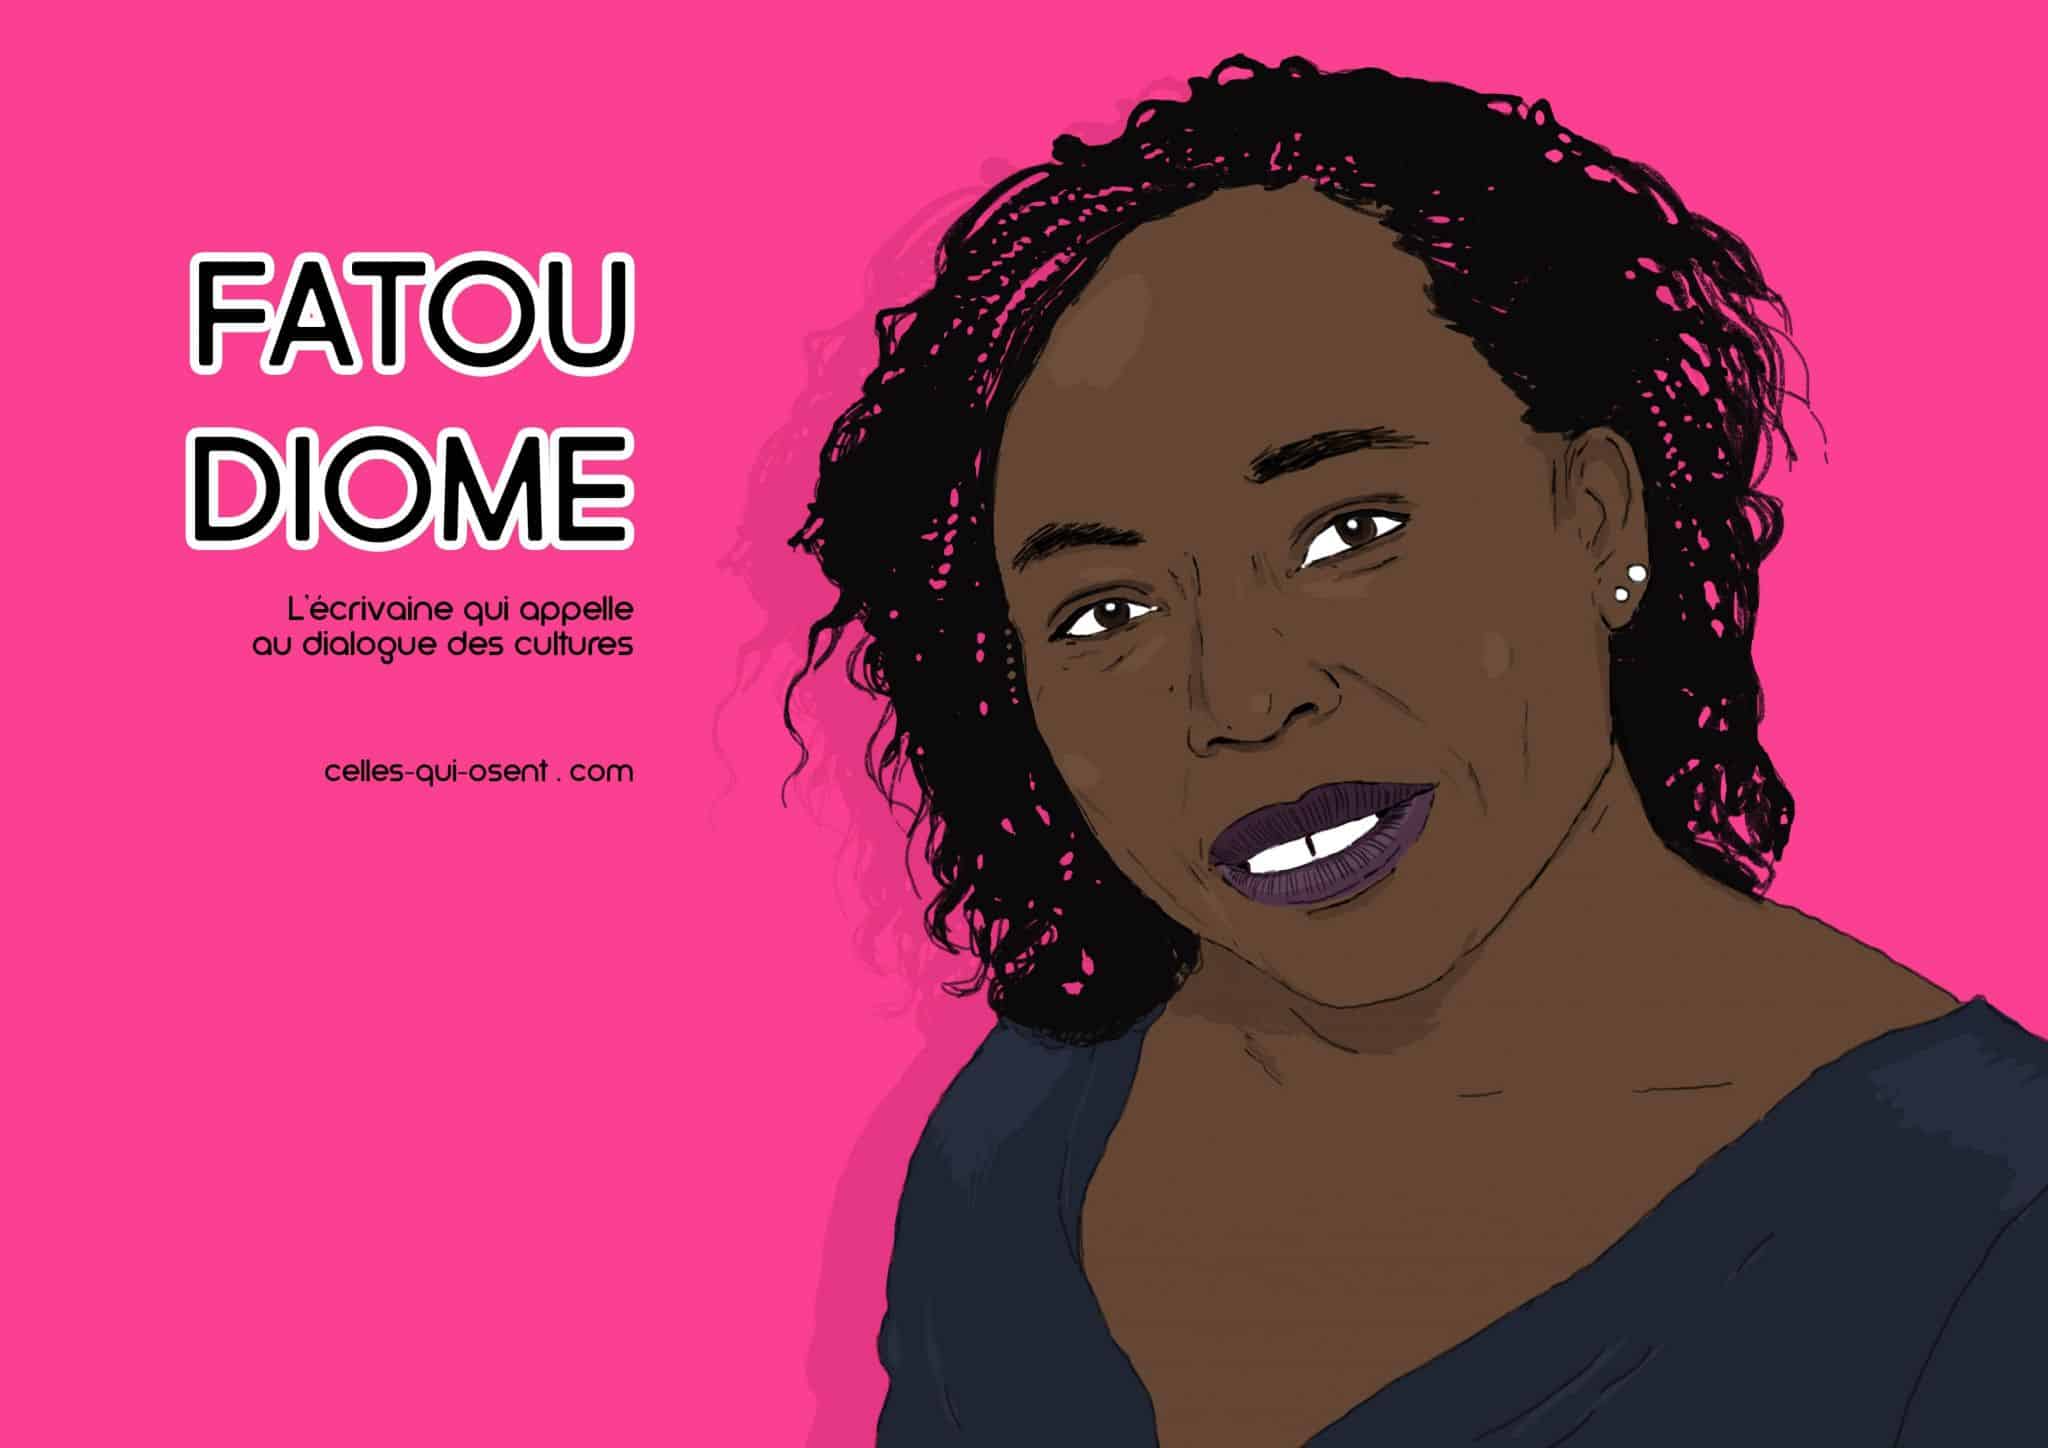 LIKABA - [ FATOU DIOME ~ CELLE QUI REND L'AFRIQUE DIGNE ] L'auteure de  cette citation pleine de sagesse est Fatou Diome, une écrivaine sénégalaise  reconnue et comptant plusieurs romans, nouvelles et